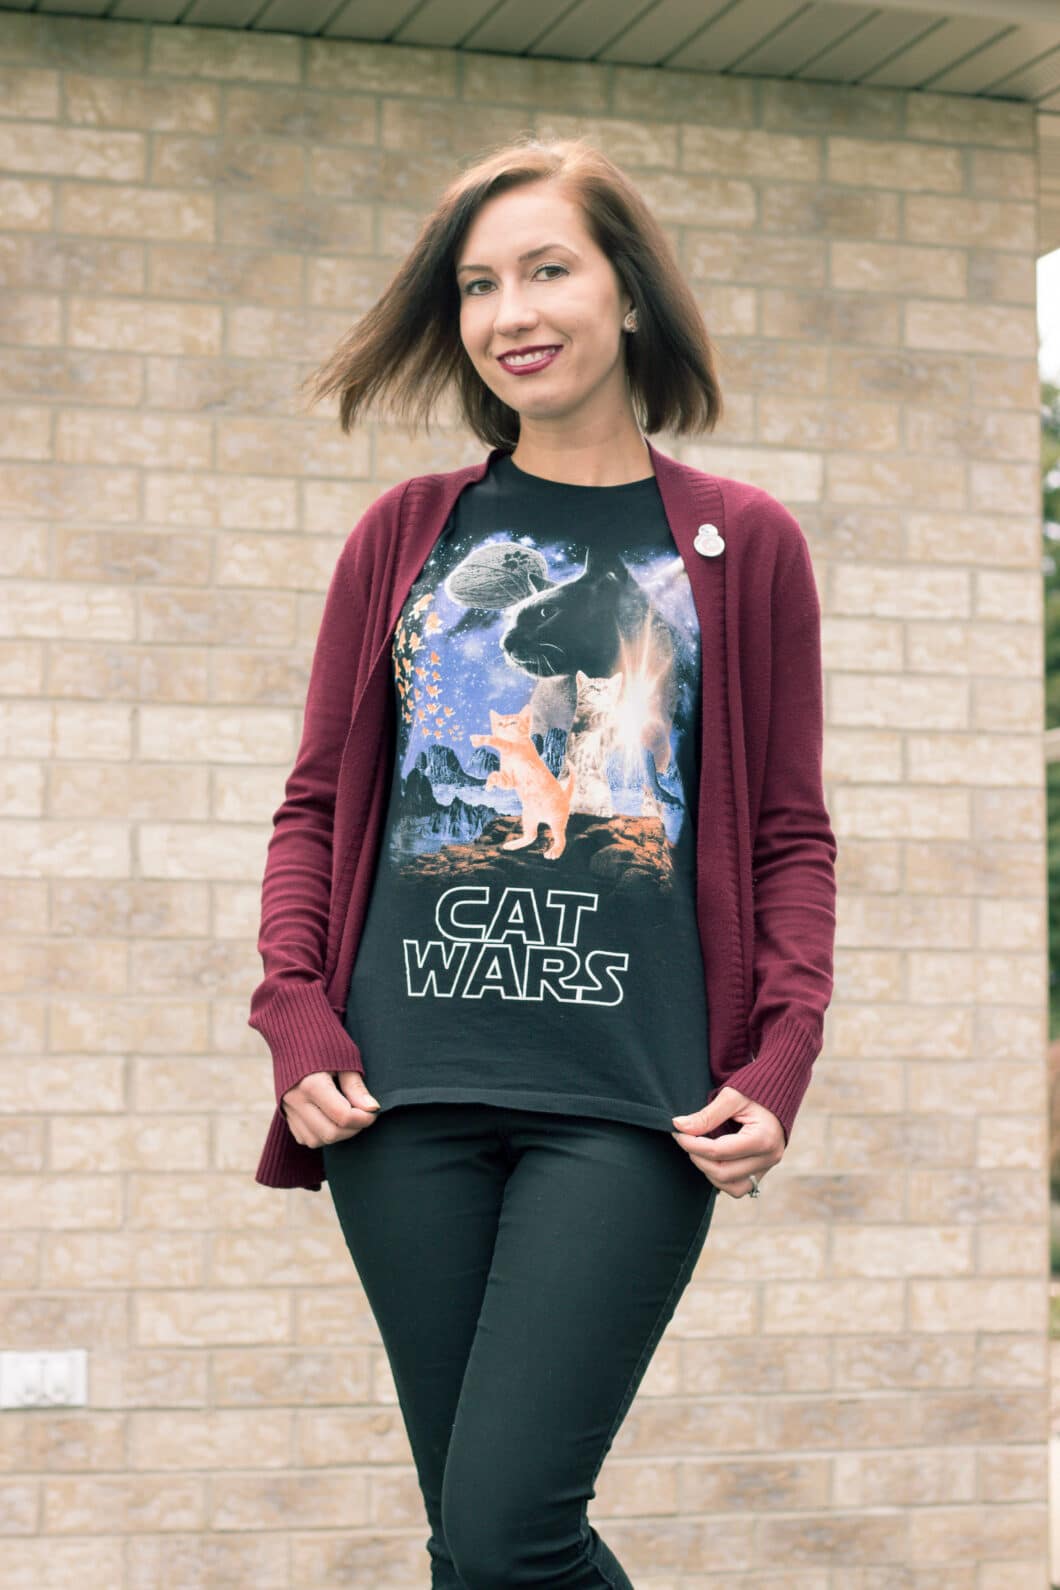 Star Wars Cat Wars shirt